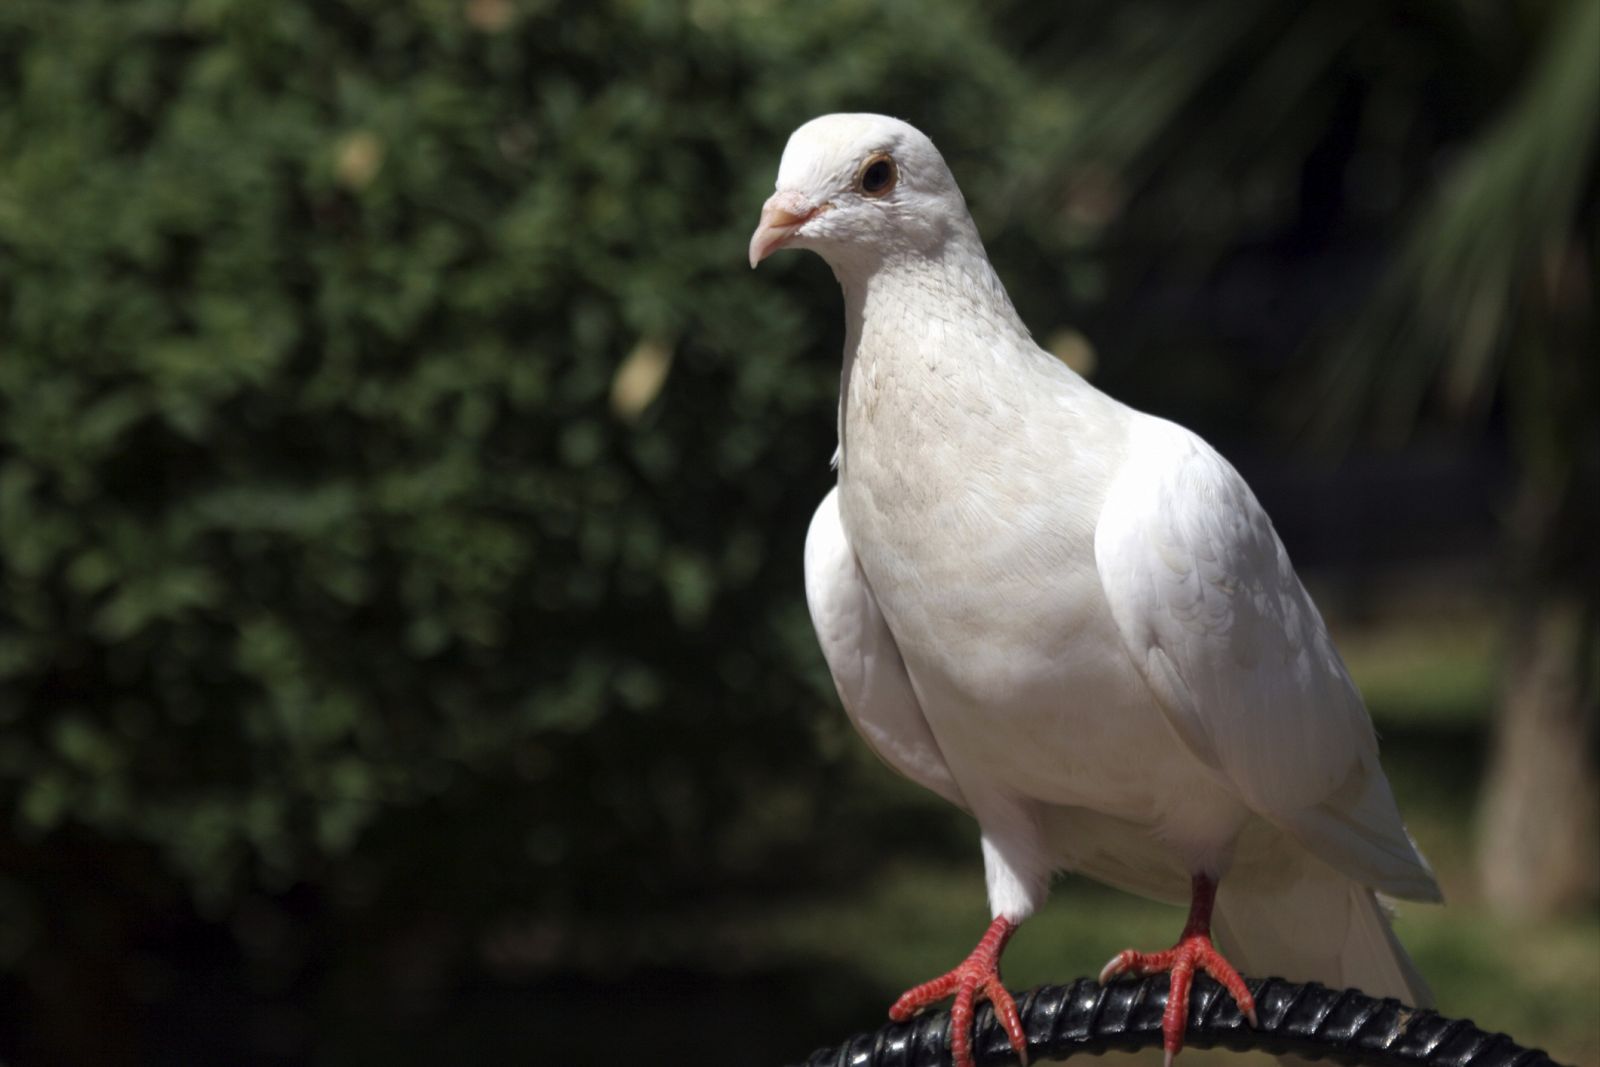 Las palomas son conocidas por su extraordinaria capacidad de orientación